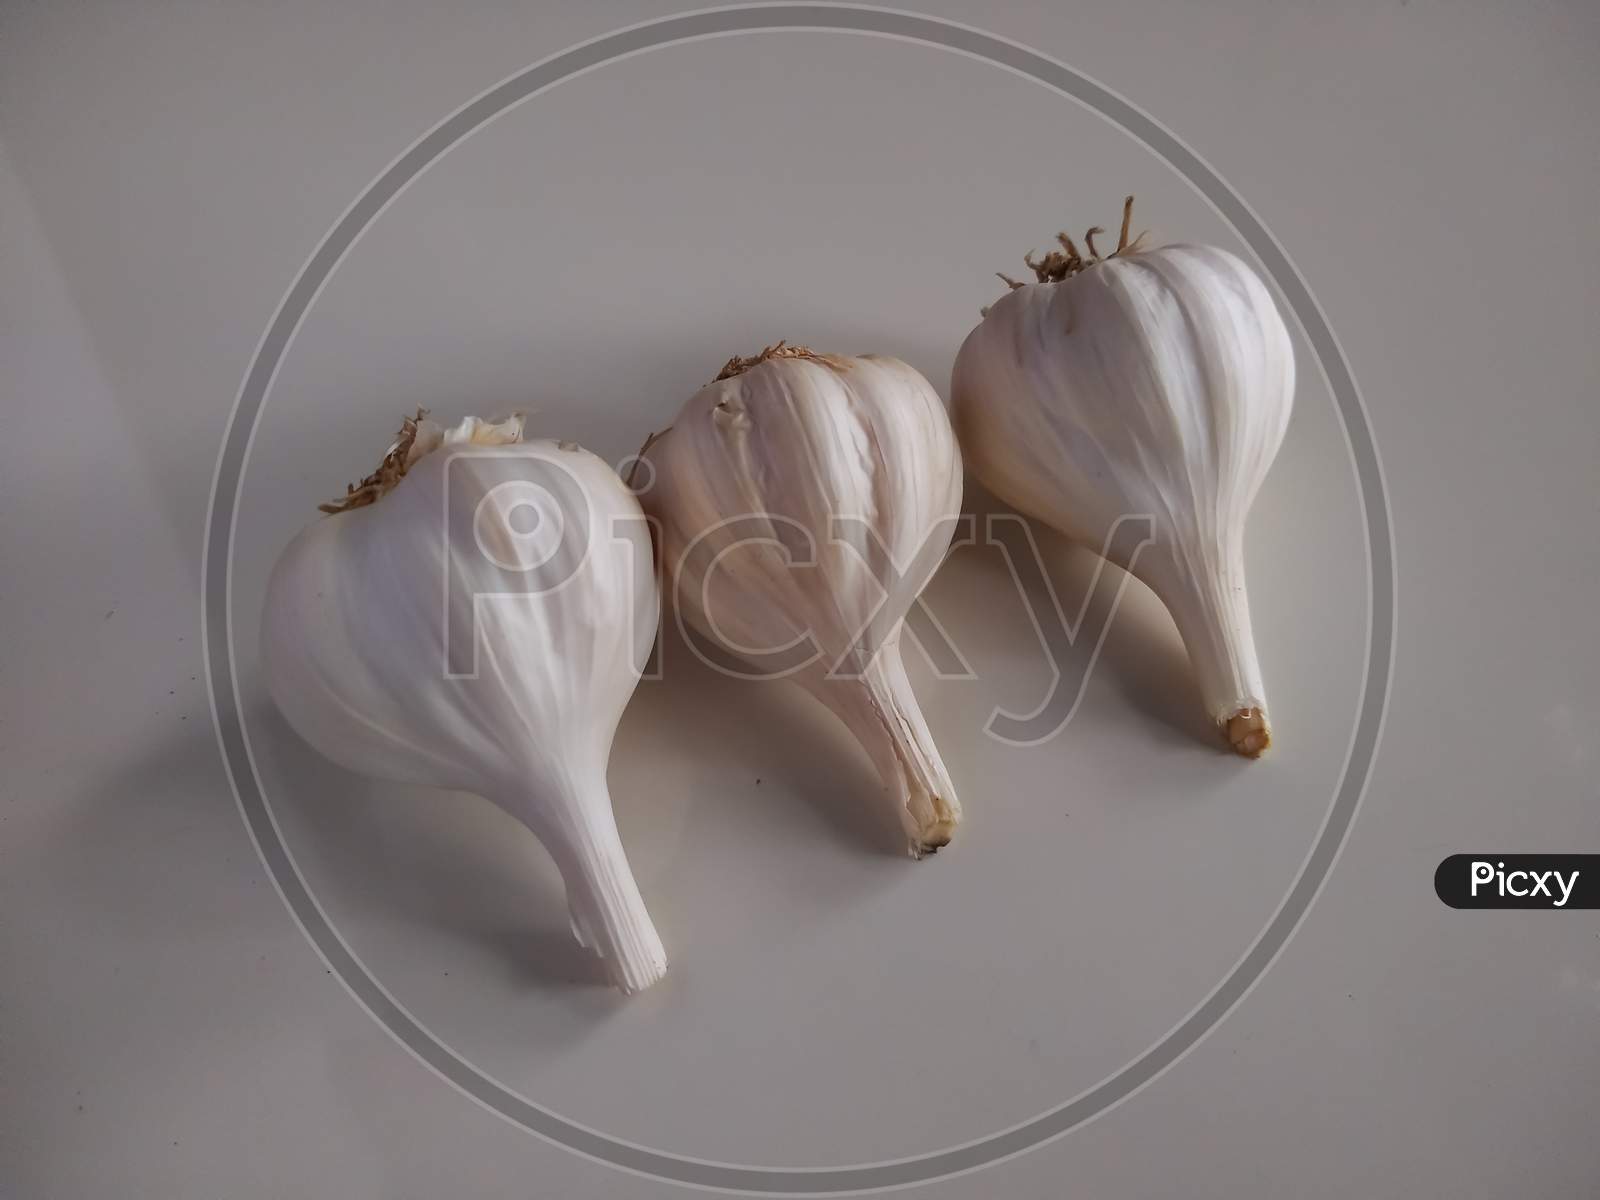 Raw garlic on white background